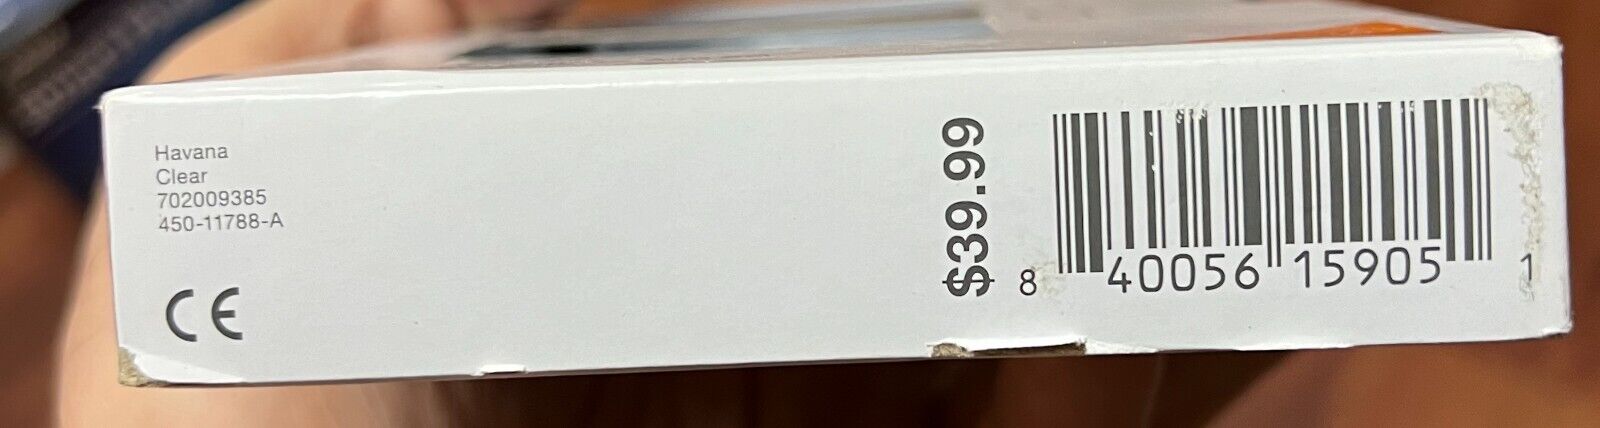 NEW GENUINE ZAGG Gear4 Havana Case for Samsung Galaxy A53 5G CLEAR LOT OF 25 zagg - фотография #3